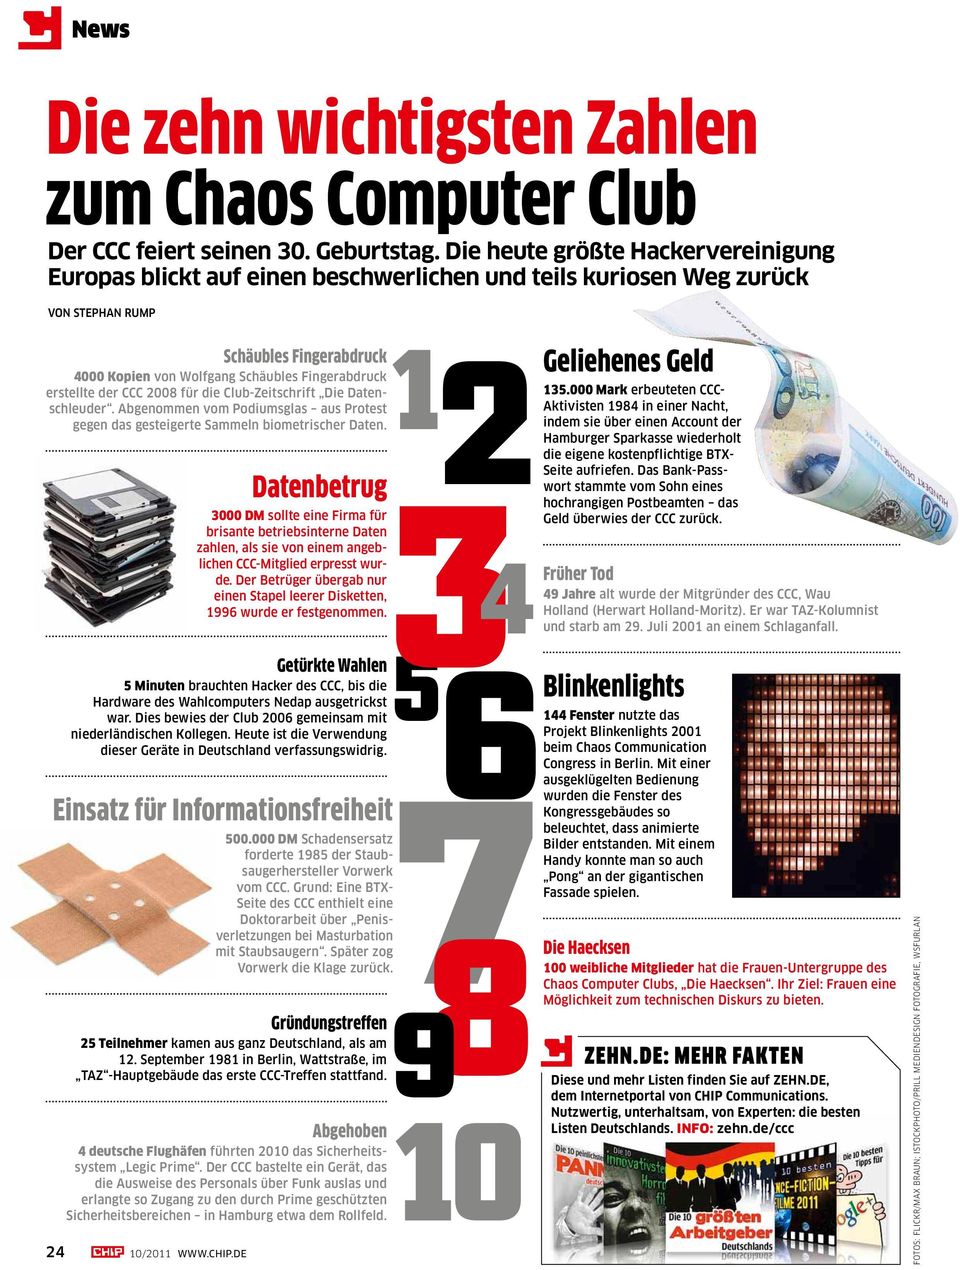 erstellte der CCC 2008 für die Club-Zeitschrift Die Datenschleuder. Abgenommen vom Podiumsglas aus Protest gegen das gesteigerte Sammeln biometrischer Daten.